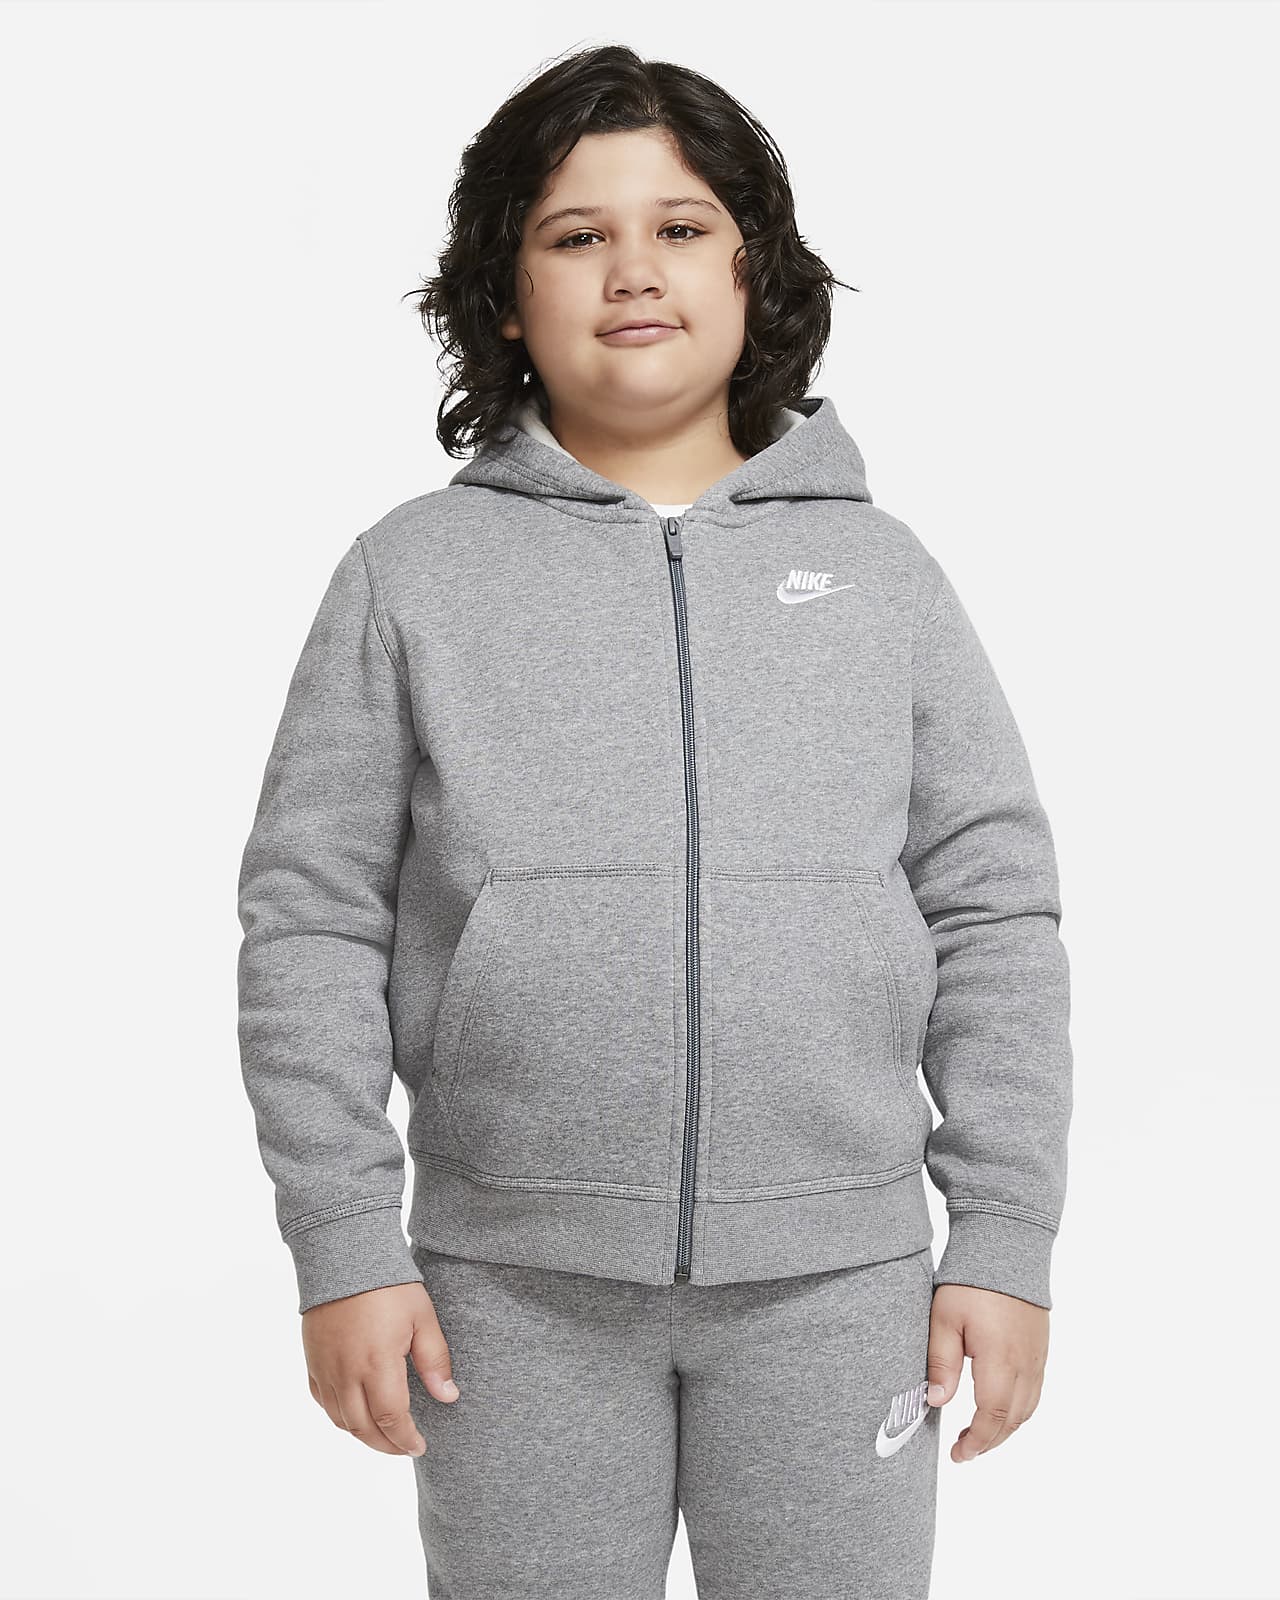 Flísová mikina Nike Sportswear Club pro větší děti (chlapce) s dlouhým zipem a kapucí (zvětšenou)